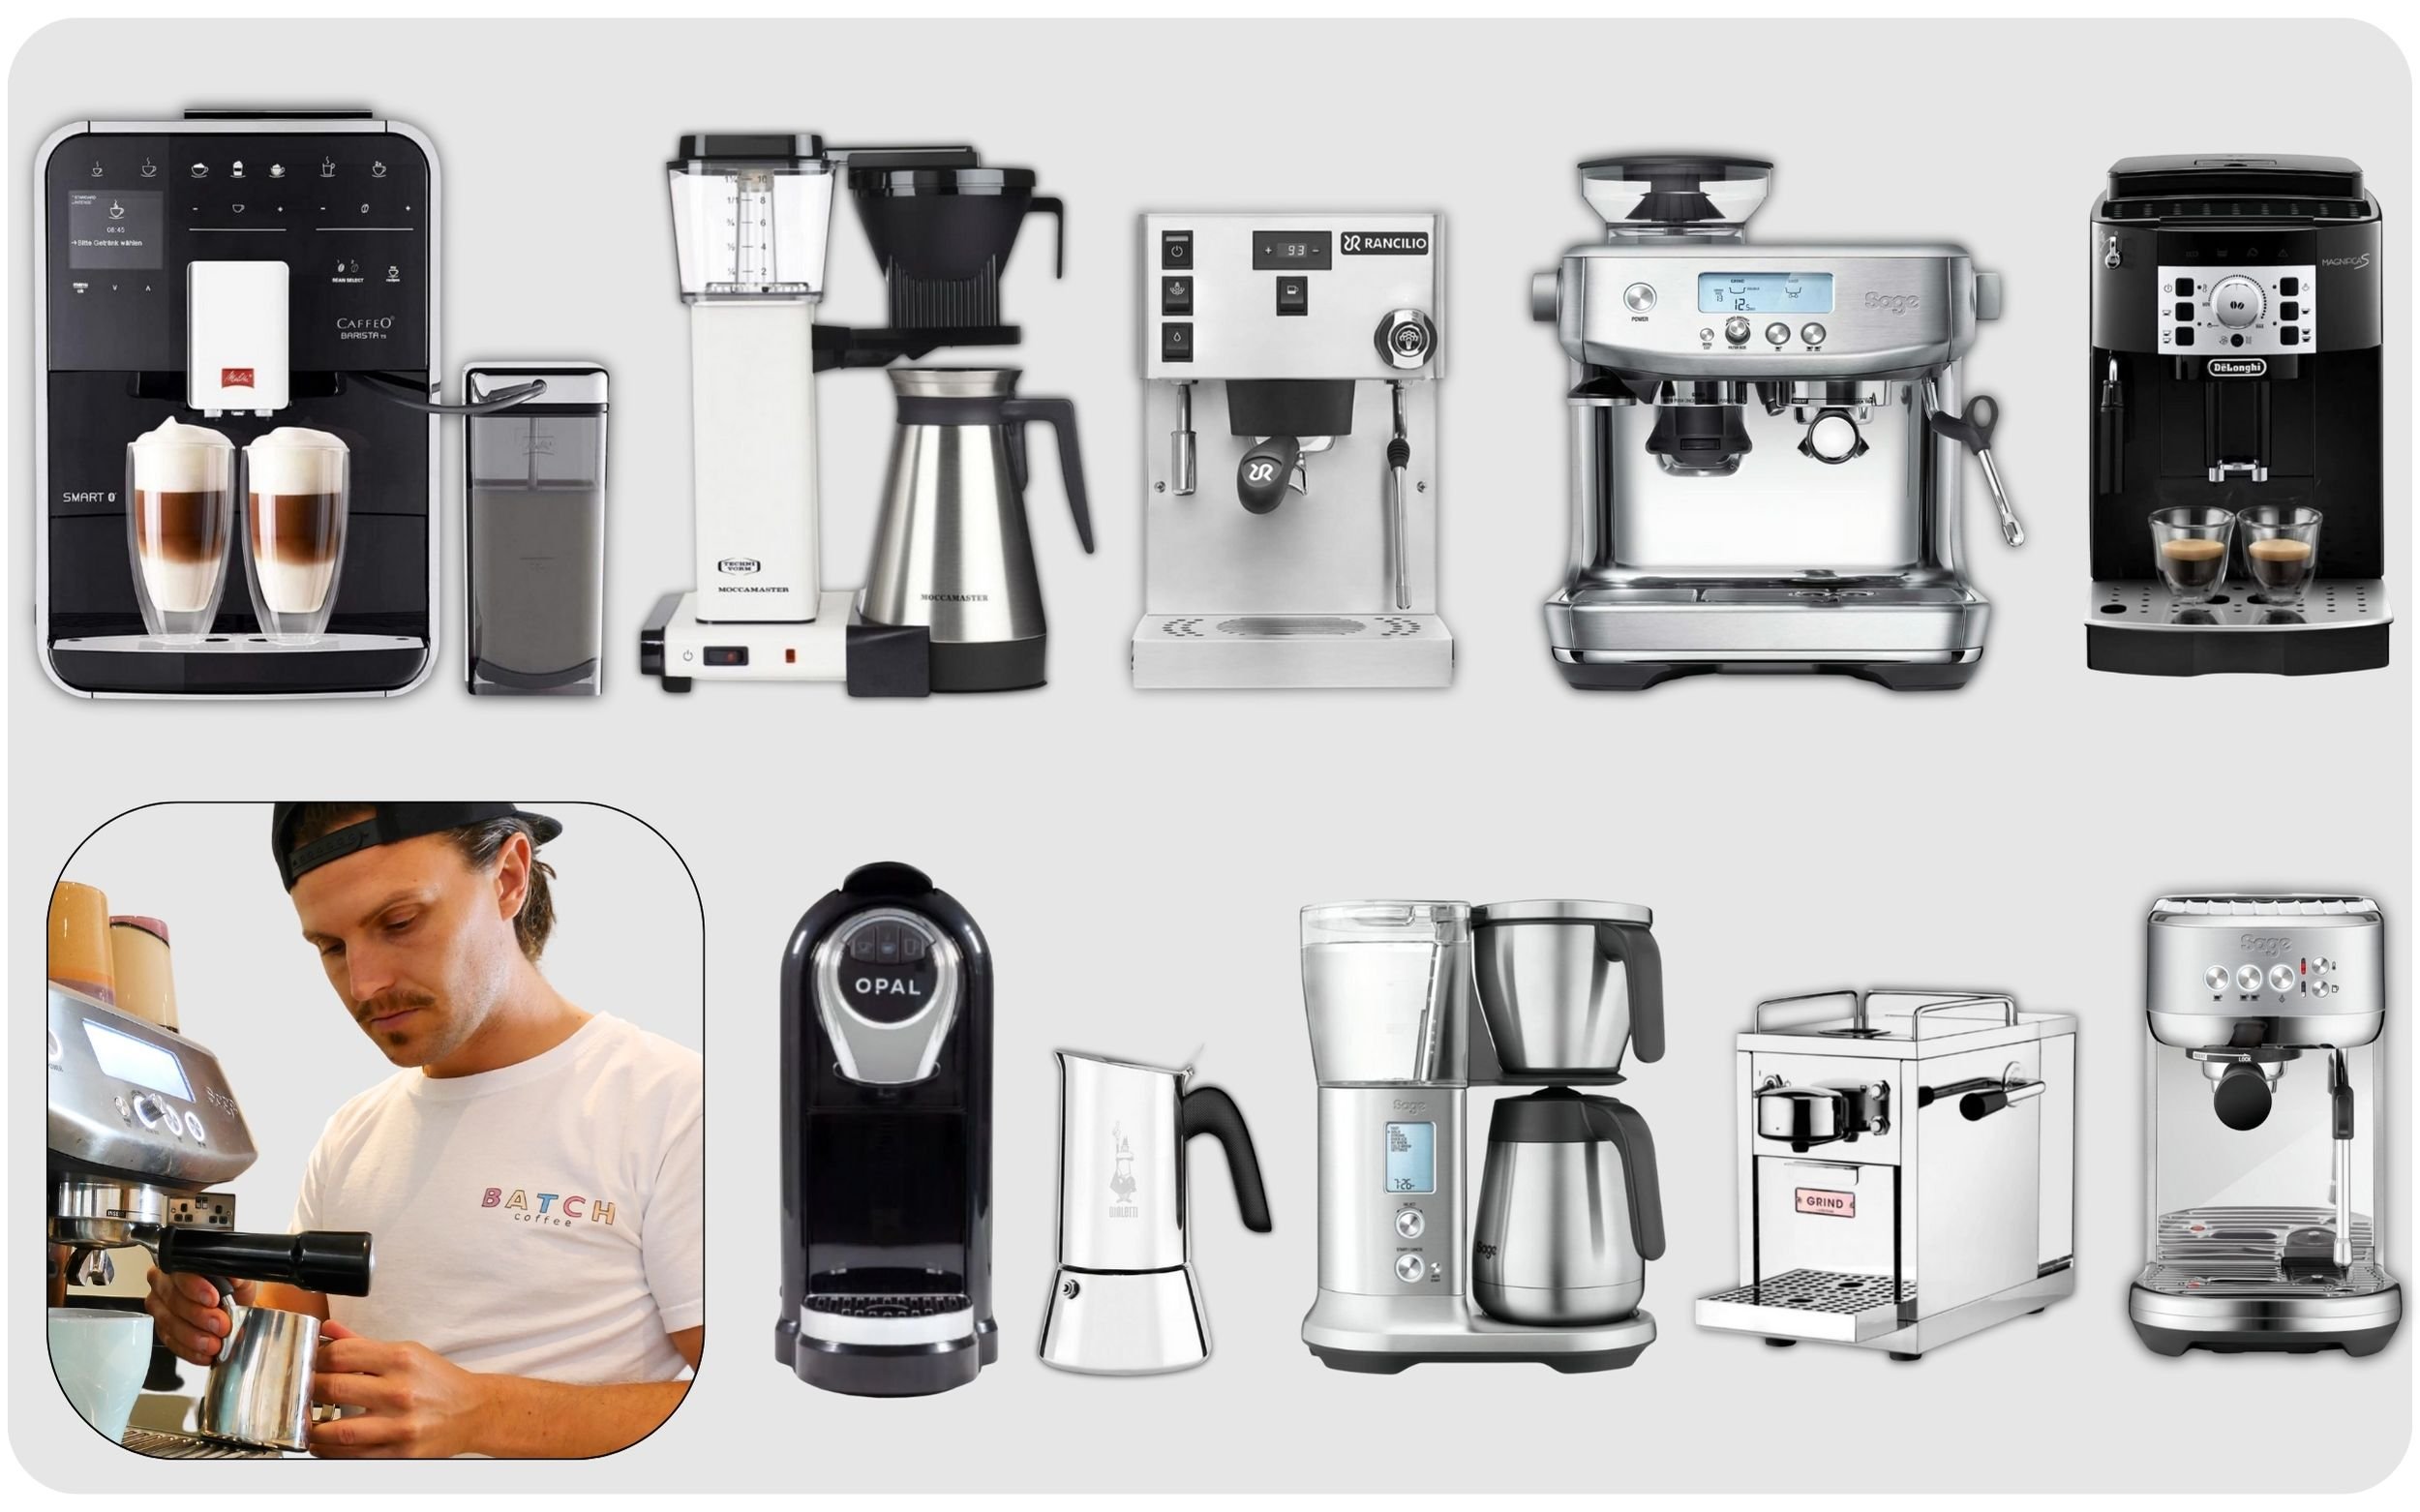 https://images.squarespace-cdn.com/content/v1/5d9633b6cd5e945f60815067/ce0e8b33-7690-4718-89c8-dd9eee4b12dc/Best+Coffee+Machine+-+Image